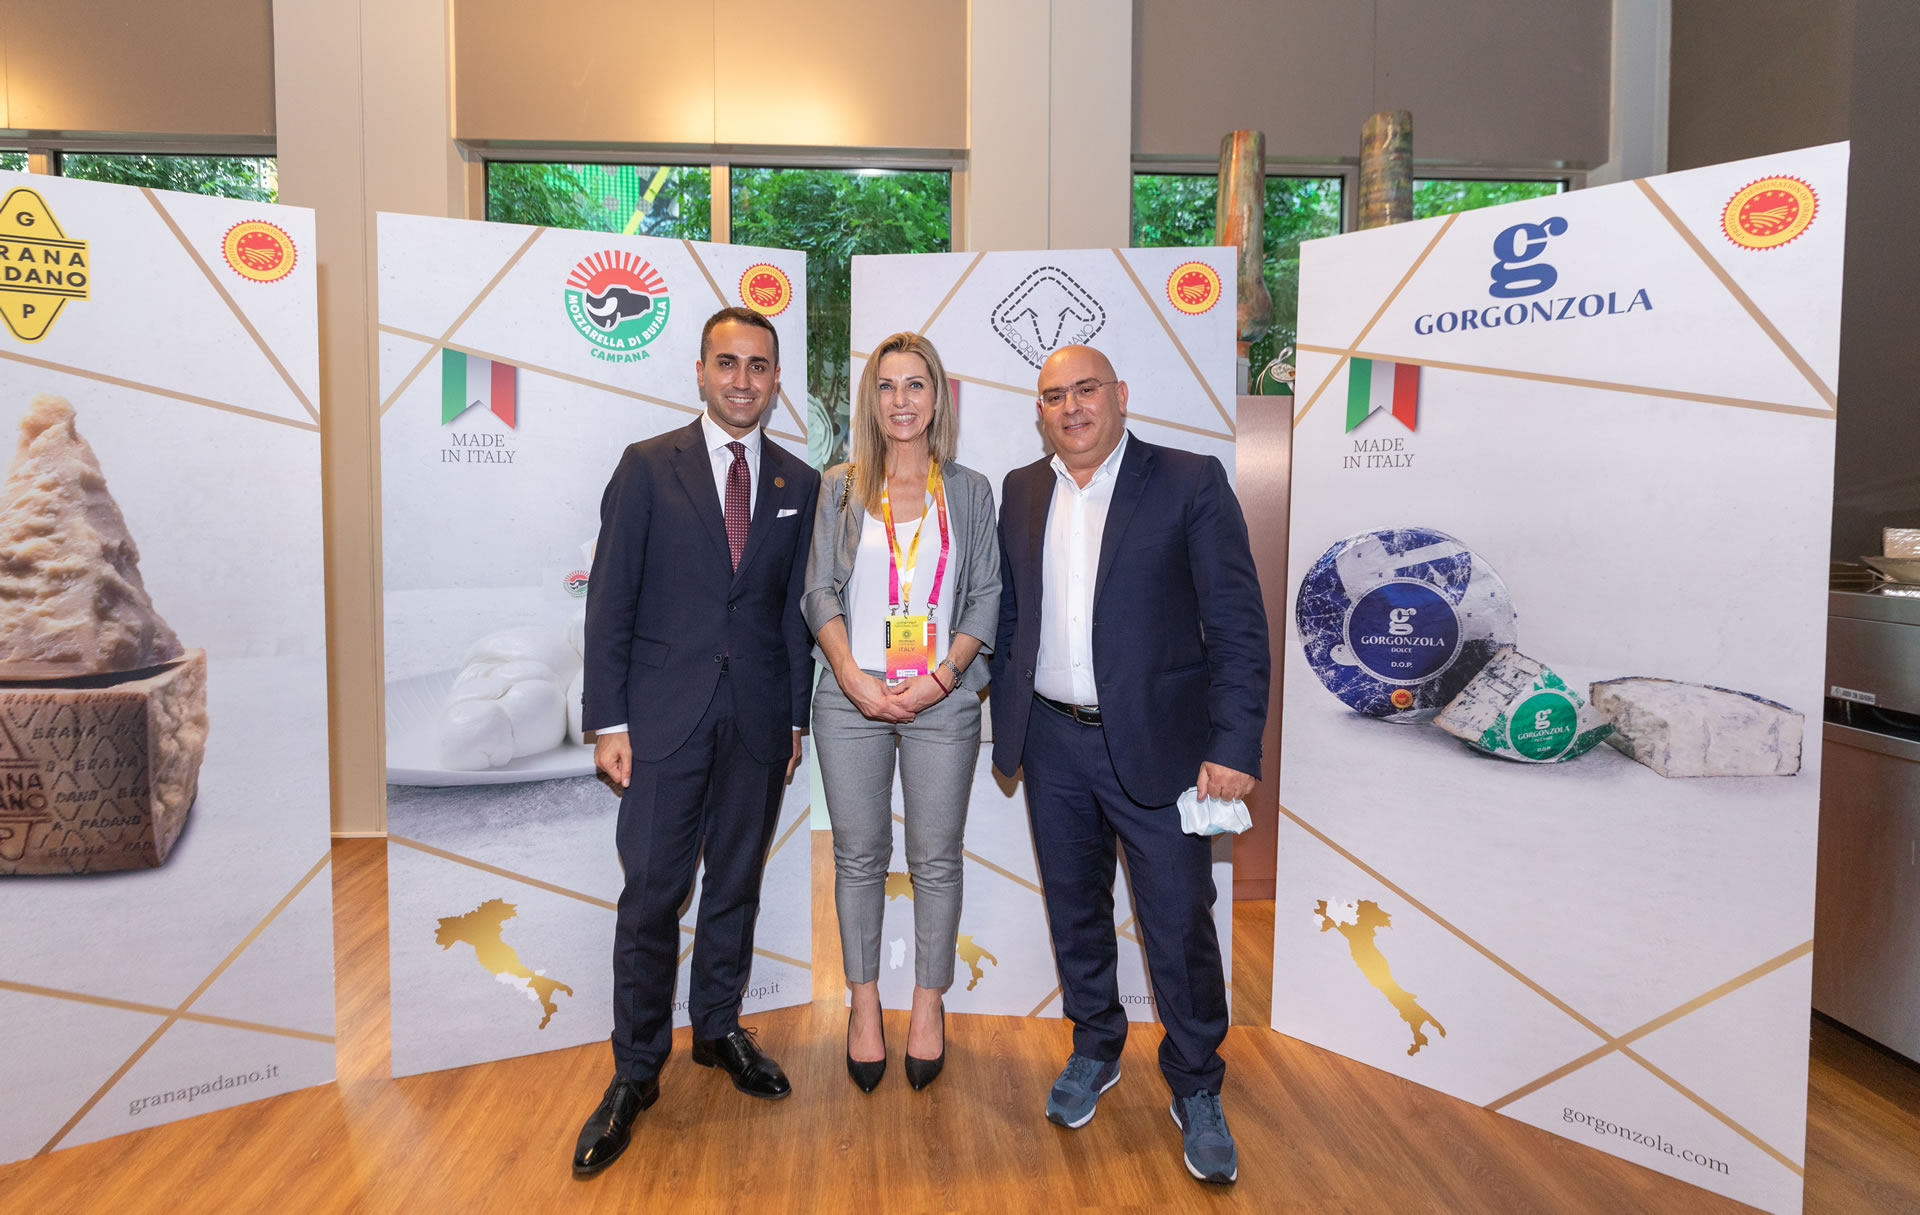 WEB_Dubai, il pres. del Consorzio Pecorino Romano Gianni Maoddi con il ministro DiMaio e il sottosegretario Vezzali.jpg